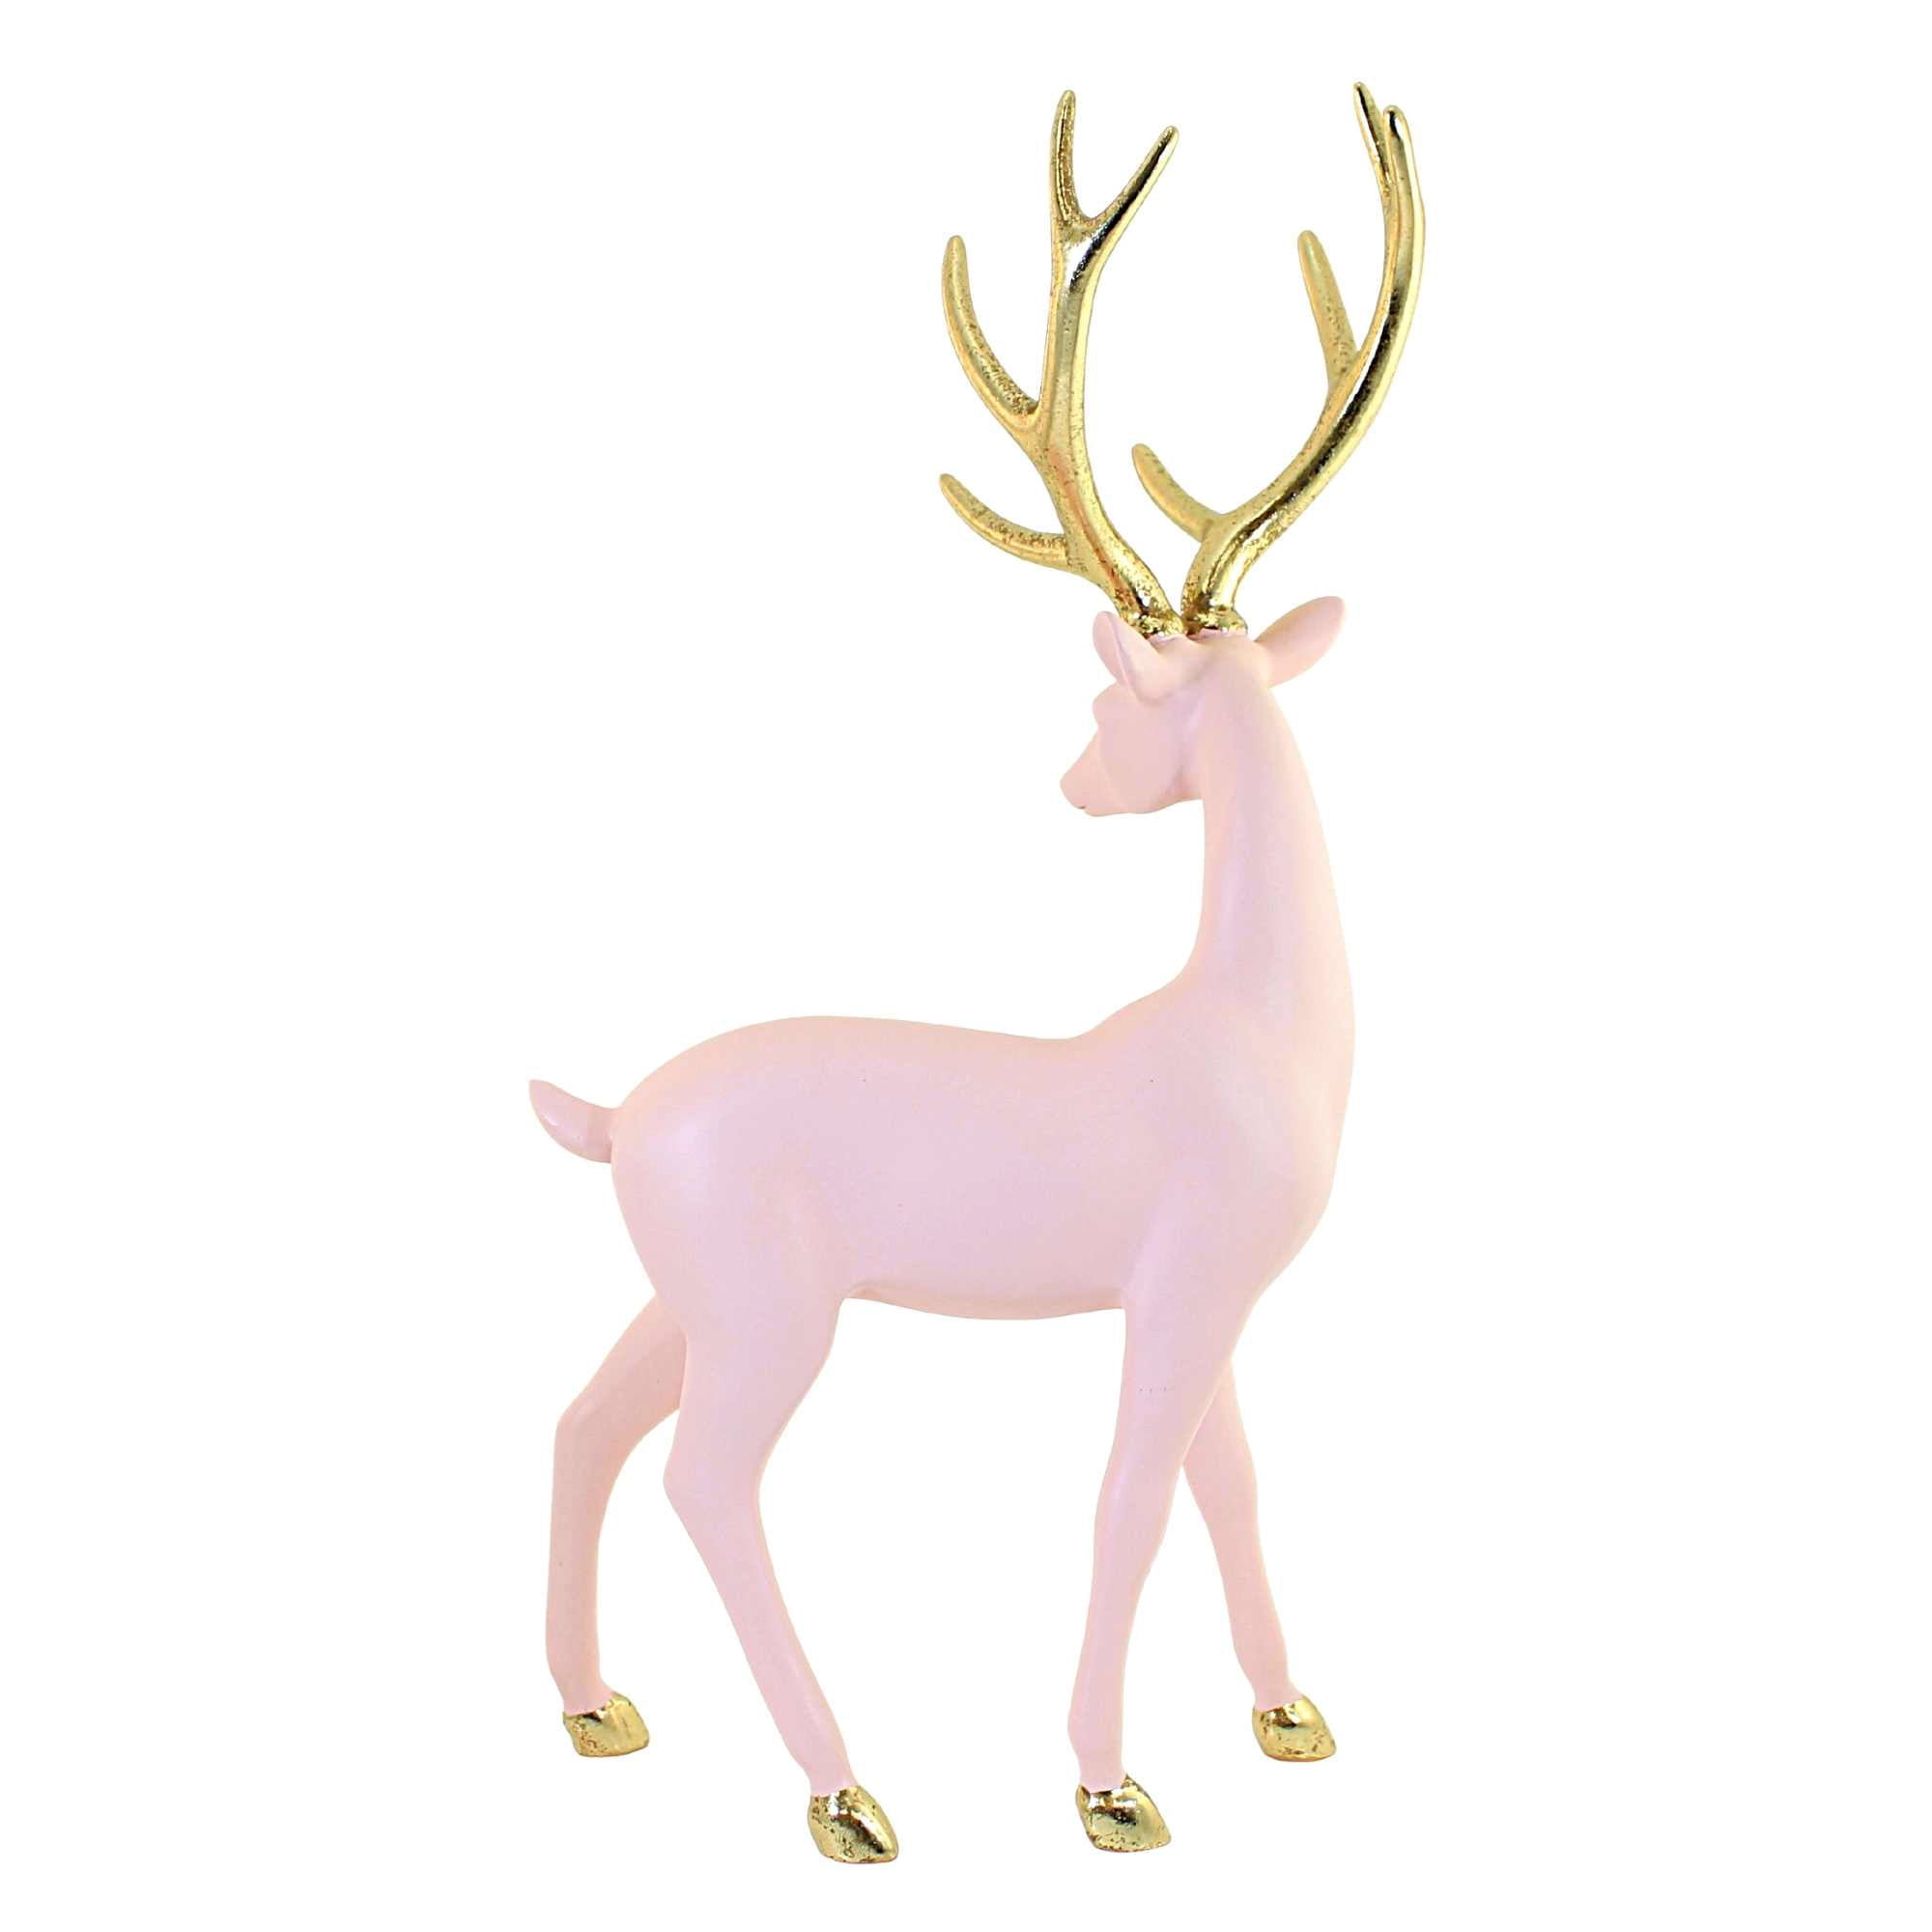 Vintage Crockpot Ornament – Pink Antlers